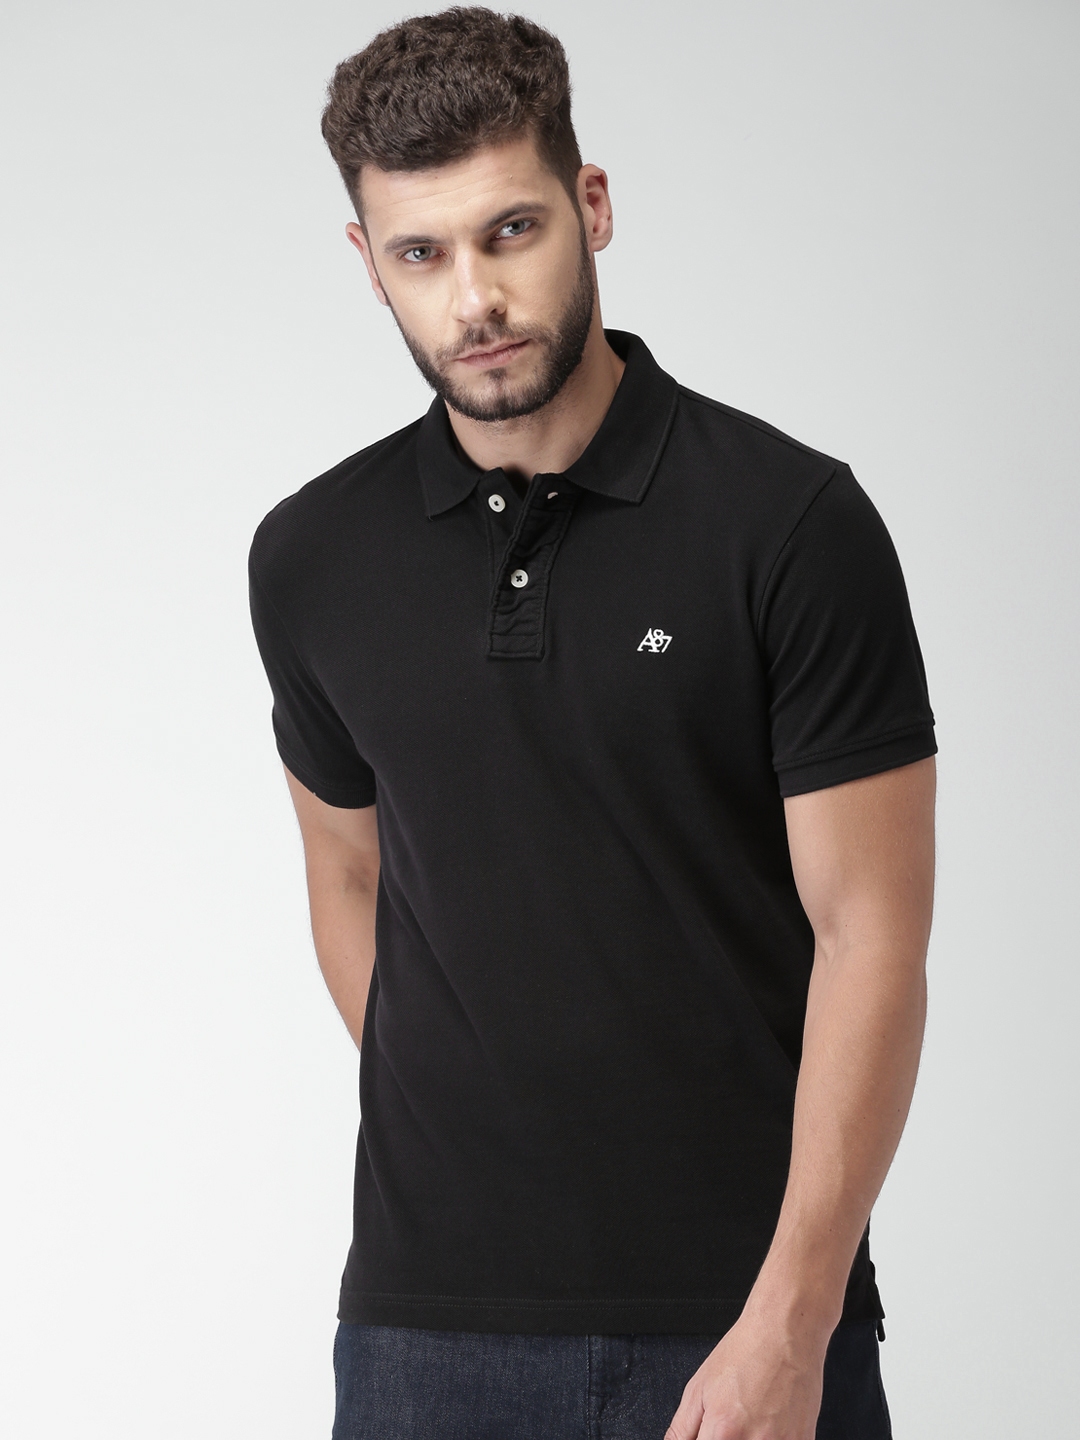 Buy Aeropostale Men Black Solid Polo T Shirt - Tshirts for Men 2503636 ...